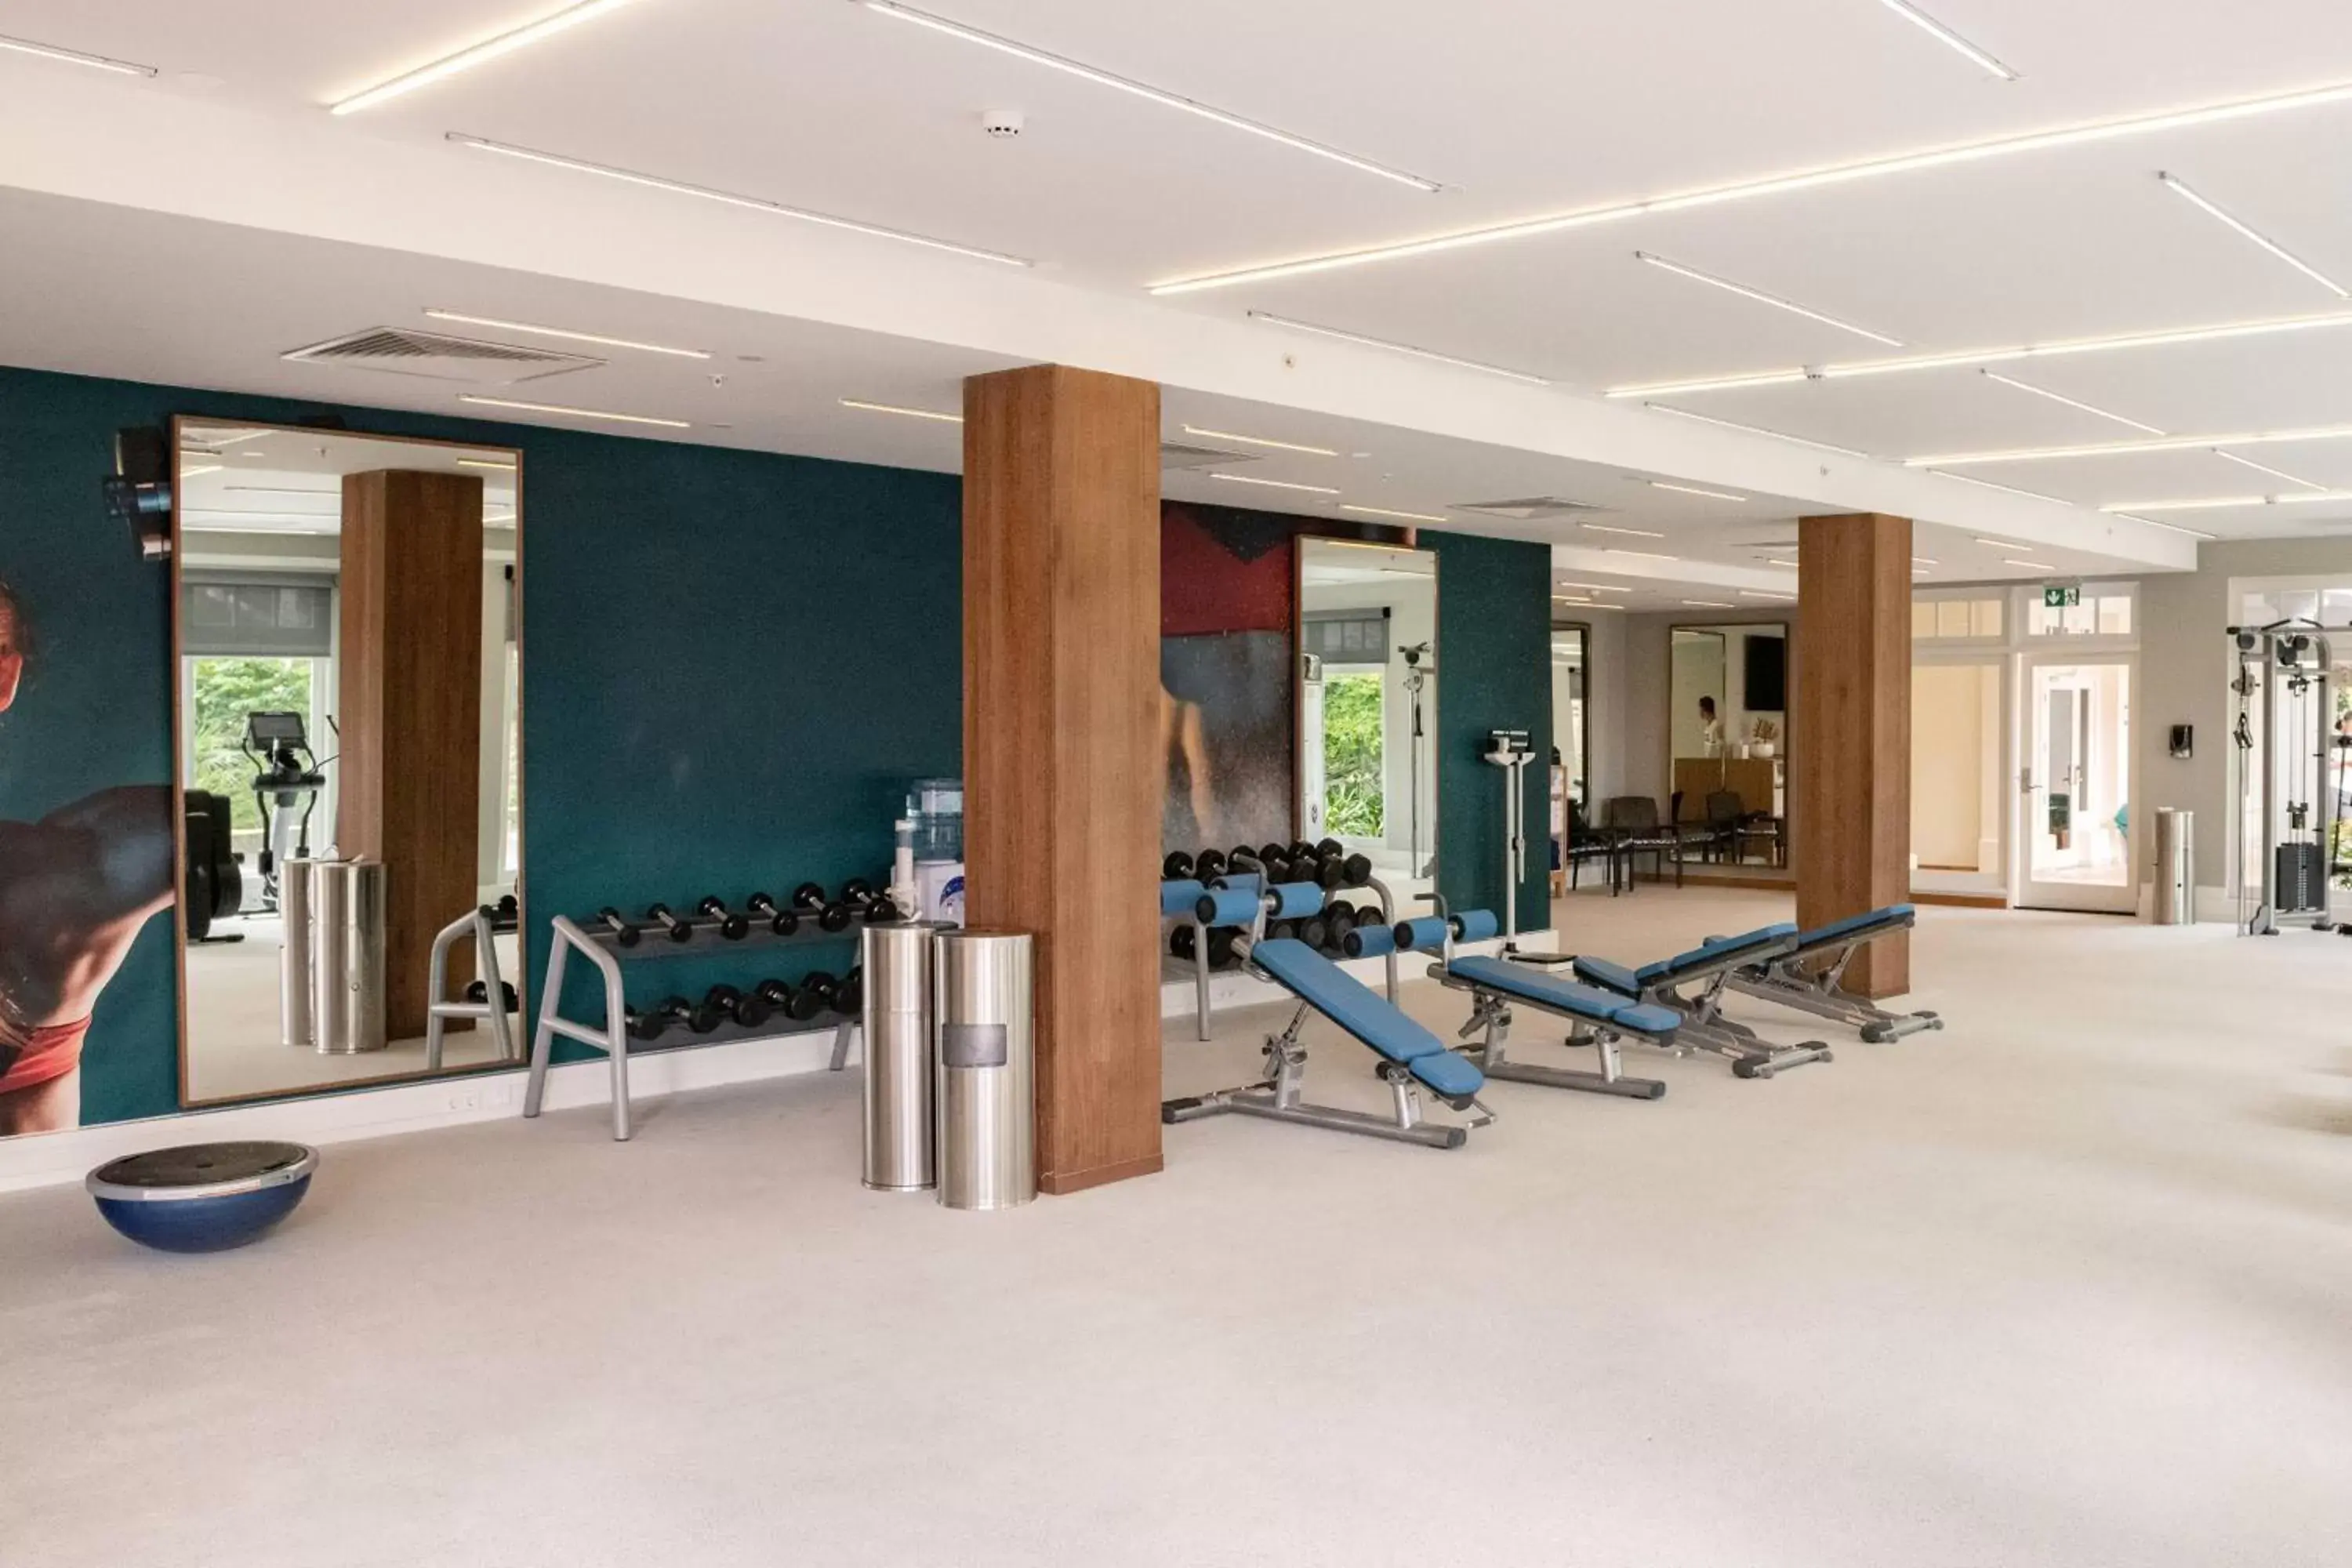 Fitness centre/facilities, Fitness Center/Facilities in Curaçao Marriott Beach Resort